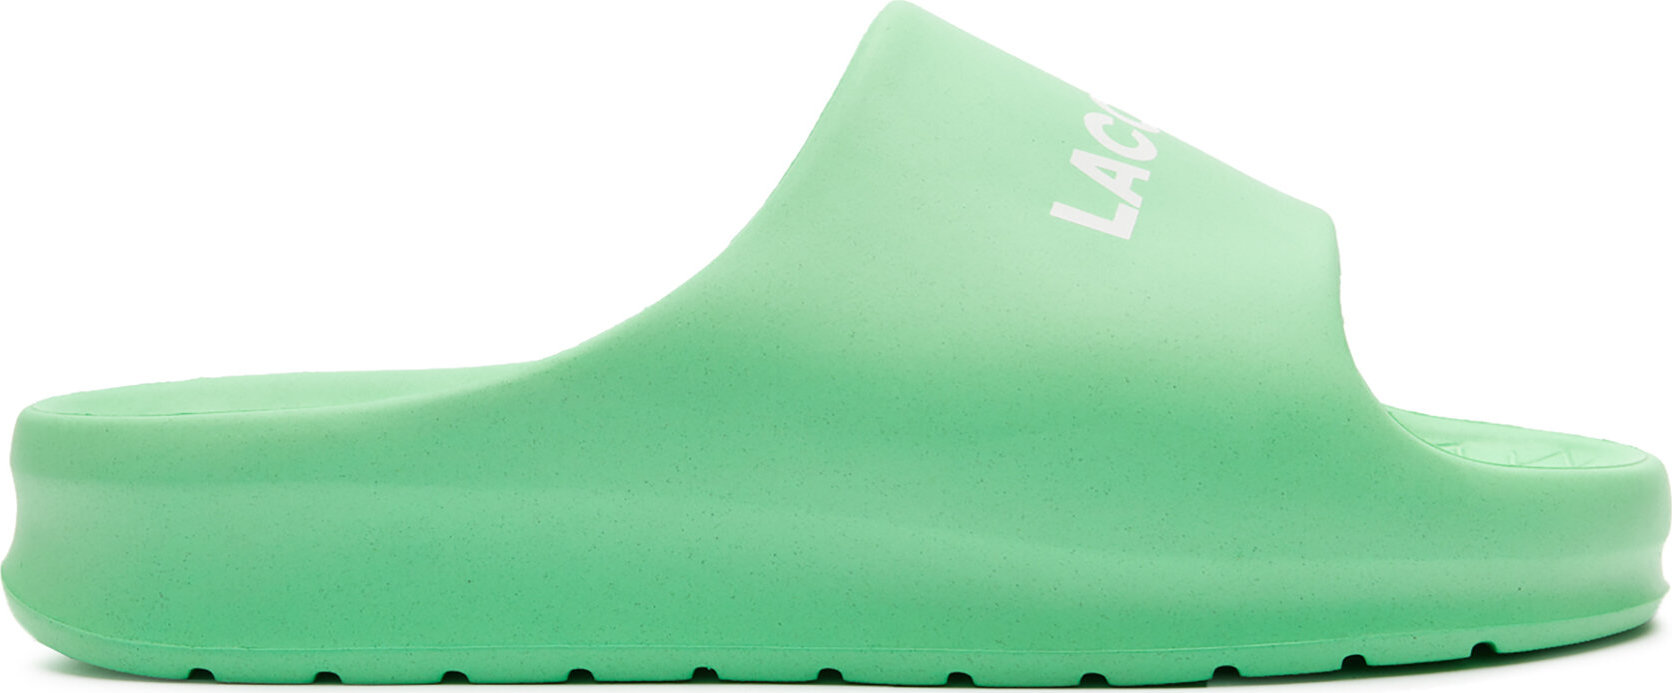 Nazouváky Lacoste Branded Serve Slide 2.0 747CMA0015 Grn/Wht 1R7